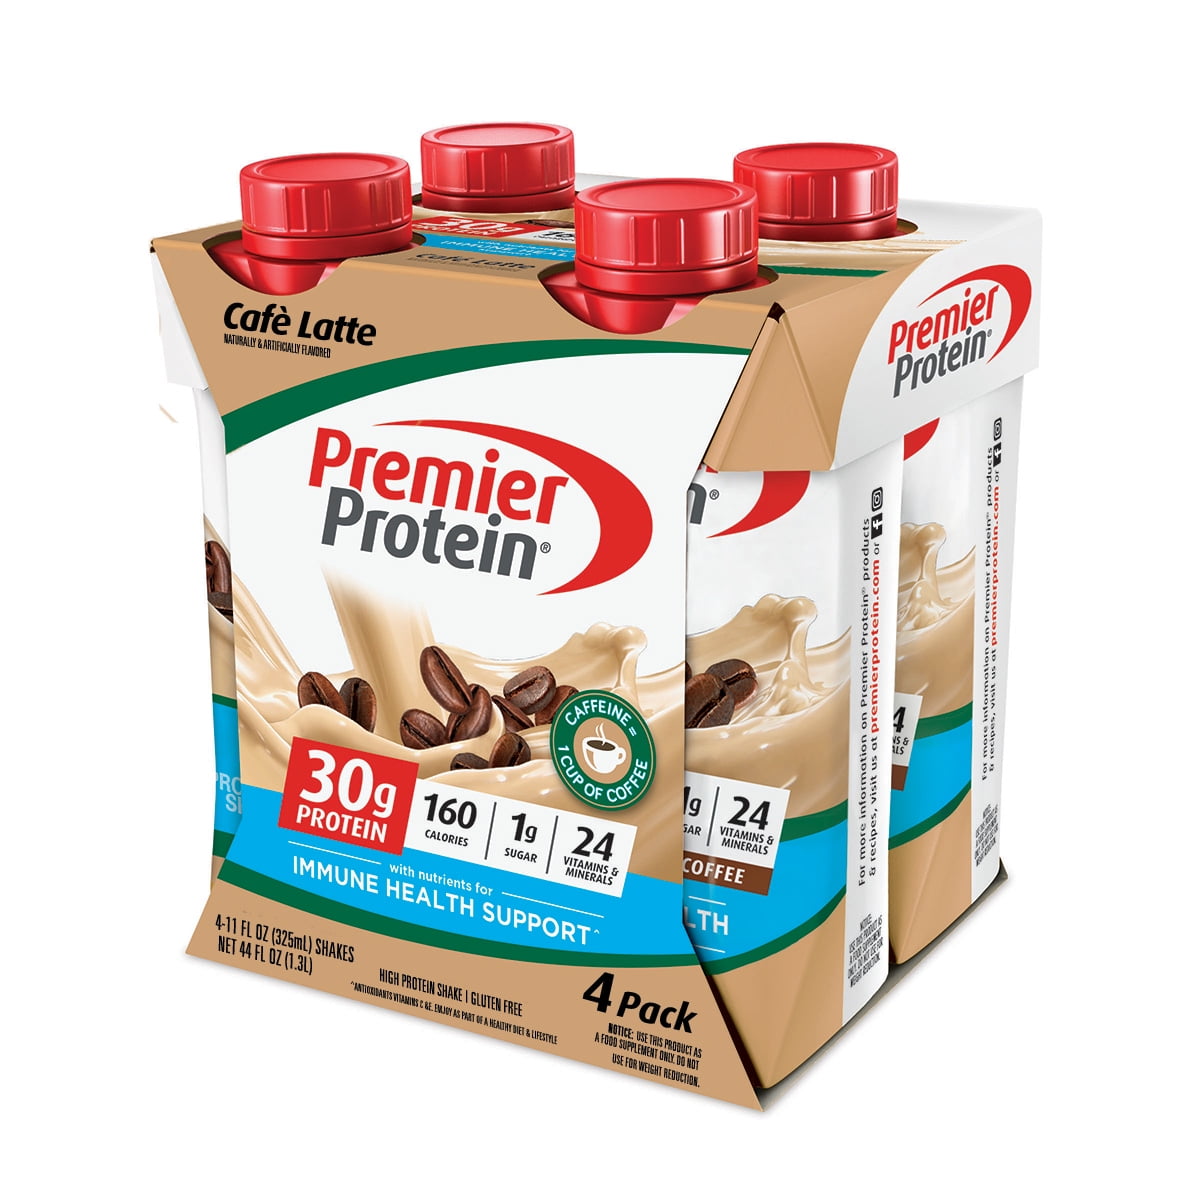 Premier Protein Shake, Café Latte, 30g Protein, 11 Fl Oz, 4 Ct - Walmart.com